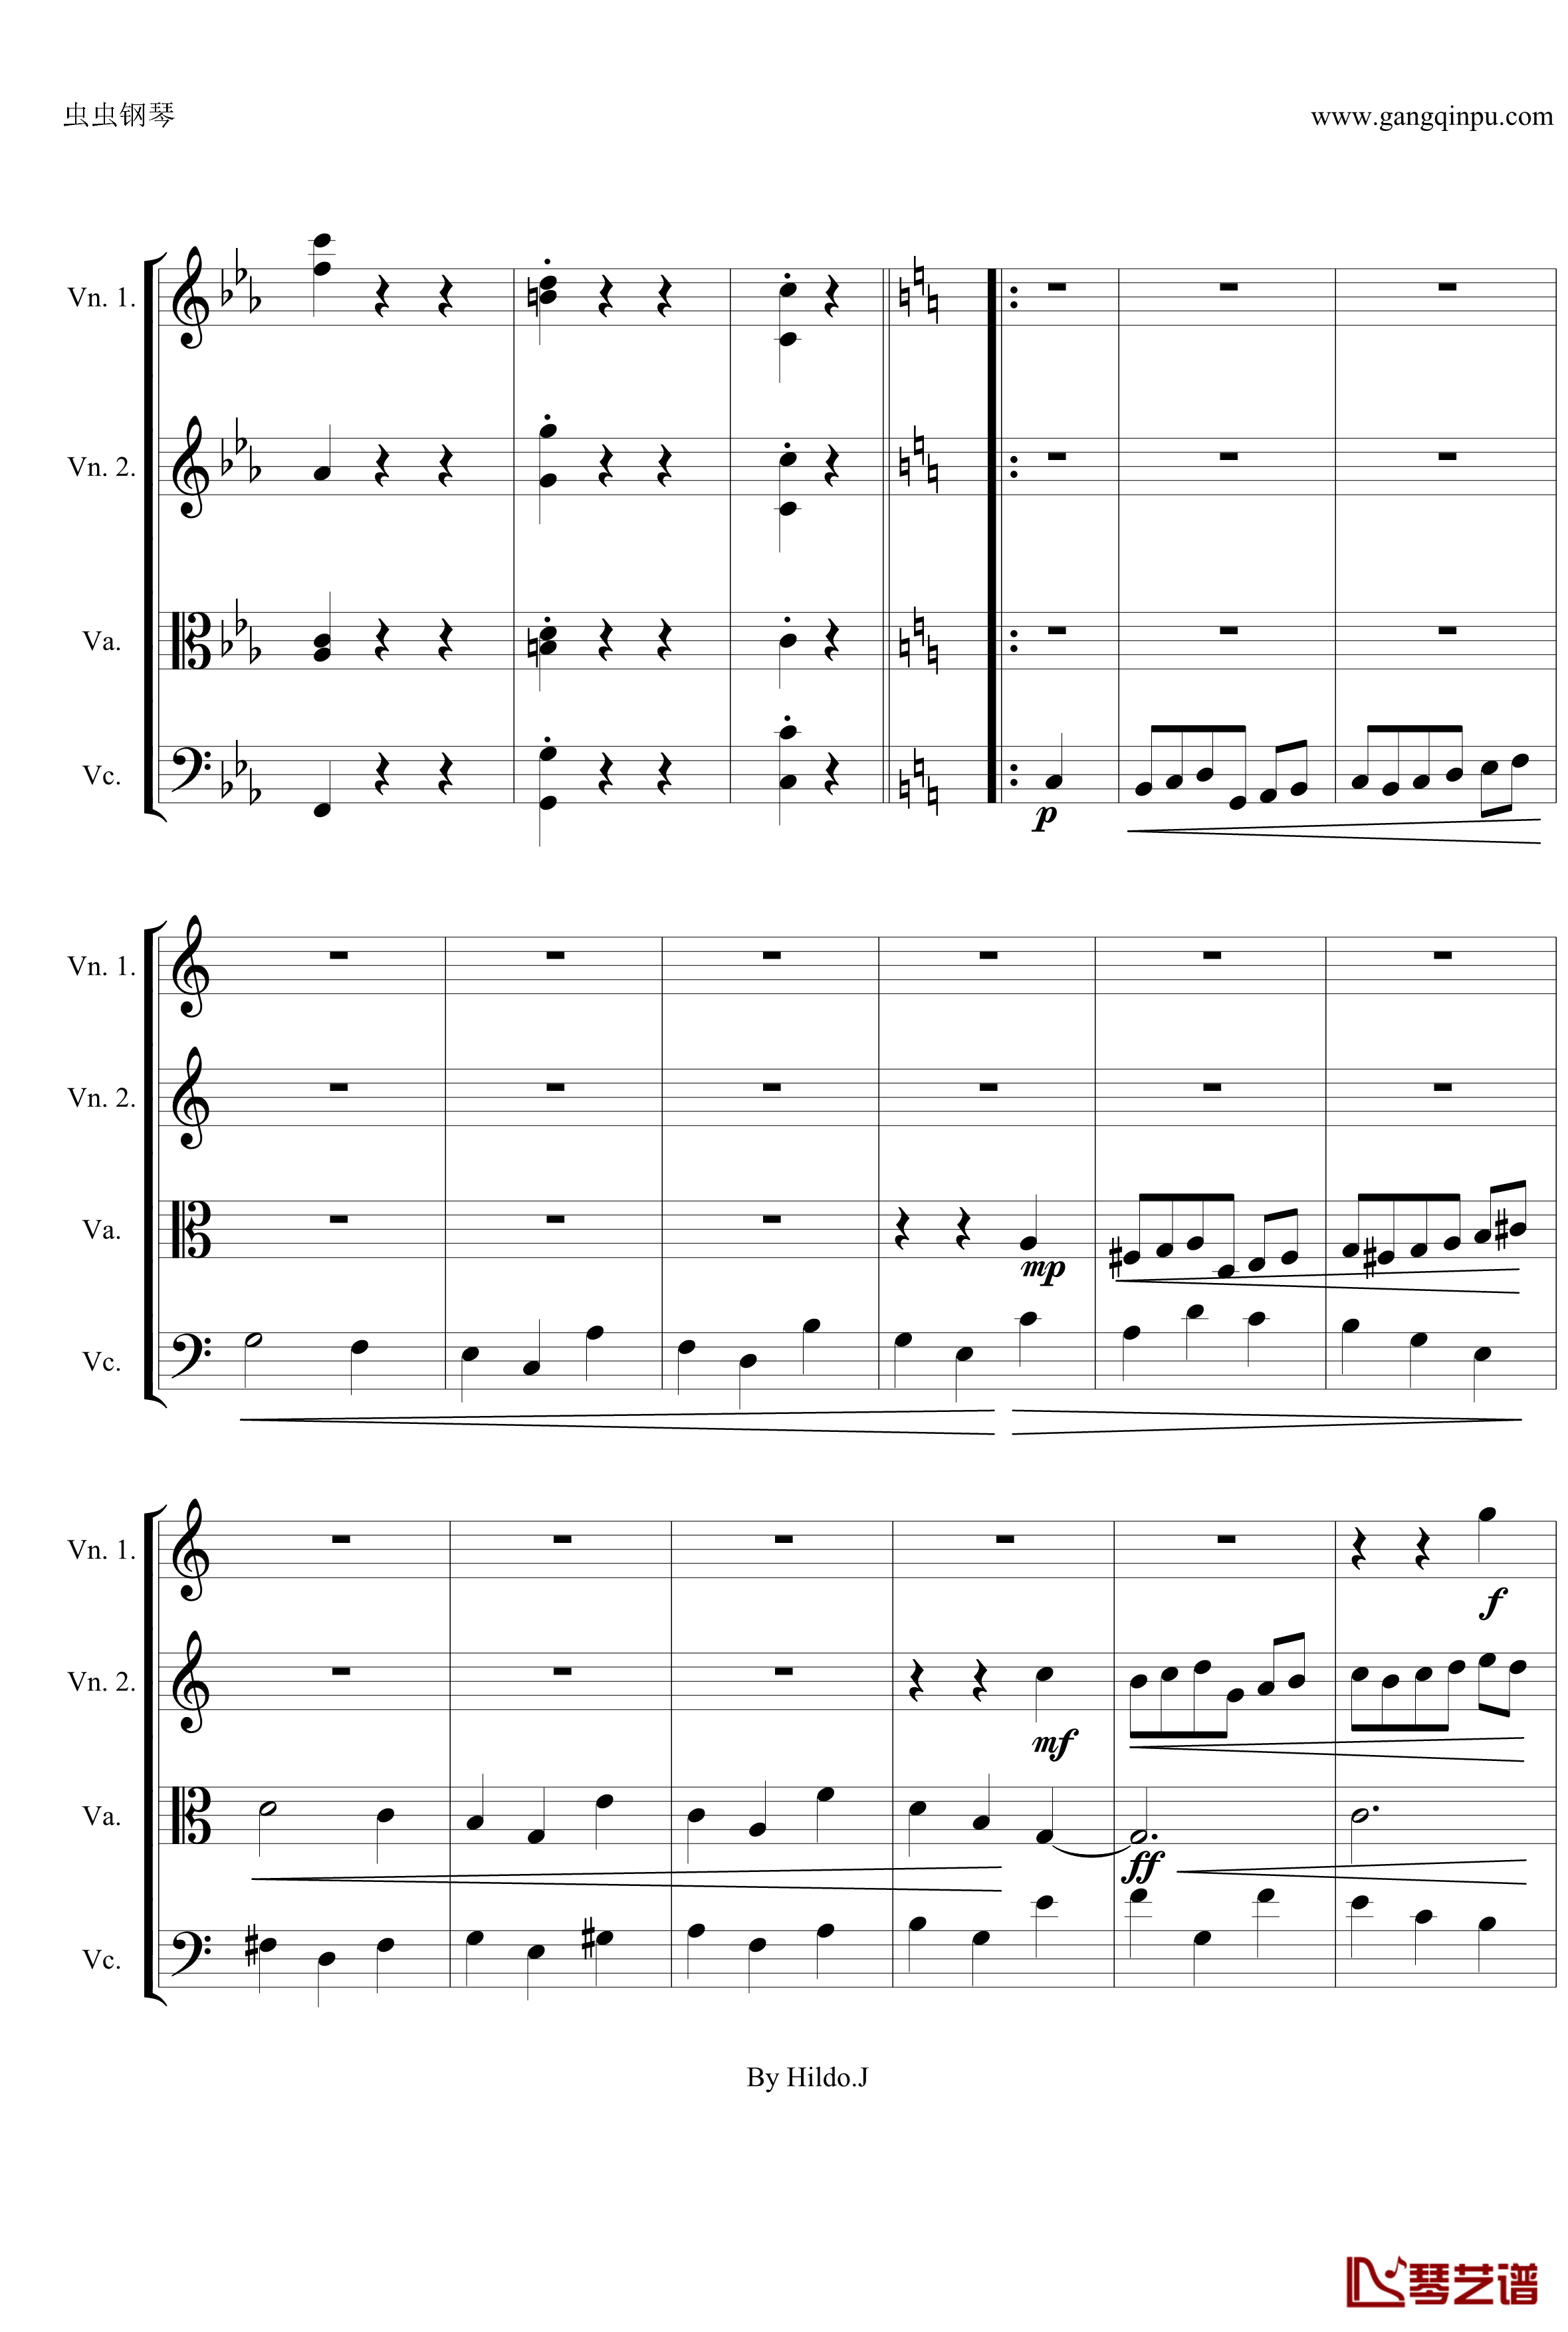 命运交响曲第三乐章钢琴谱-弦乐版-贝多芬-beethoven11